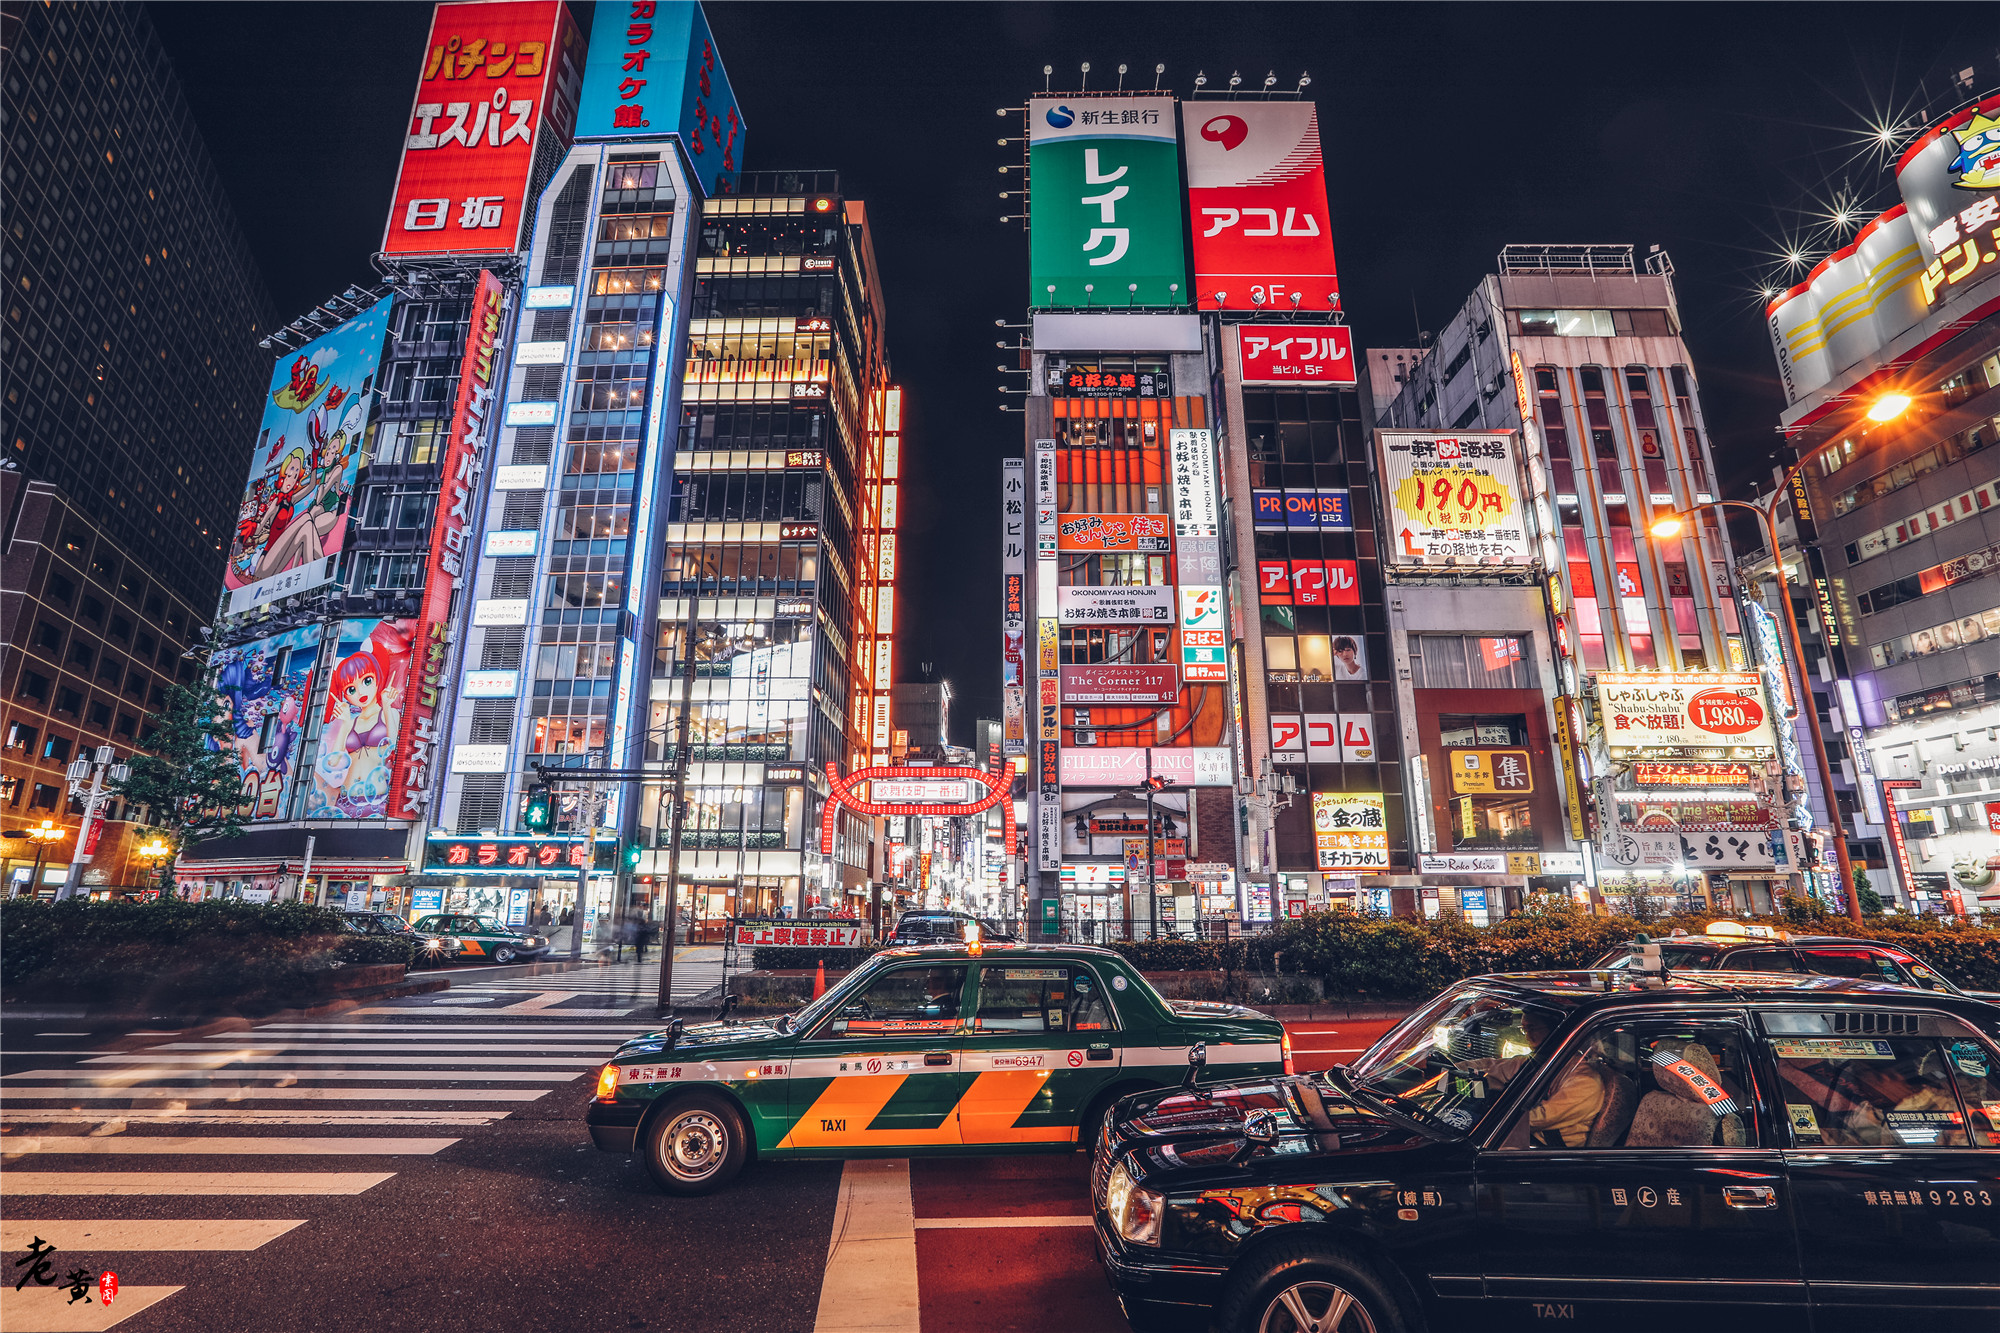 新宿这条情色街,却被冠以干净,夜探歌舞伎町一番街寻真相